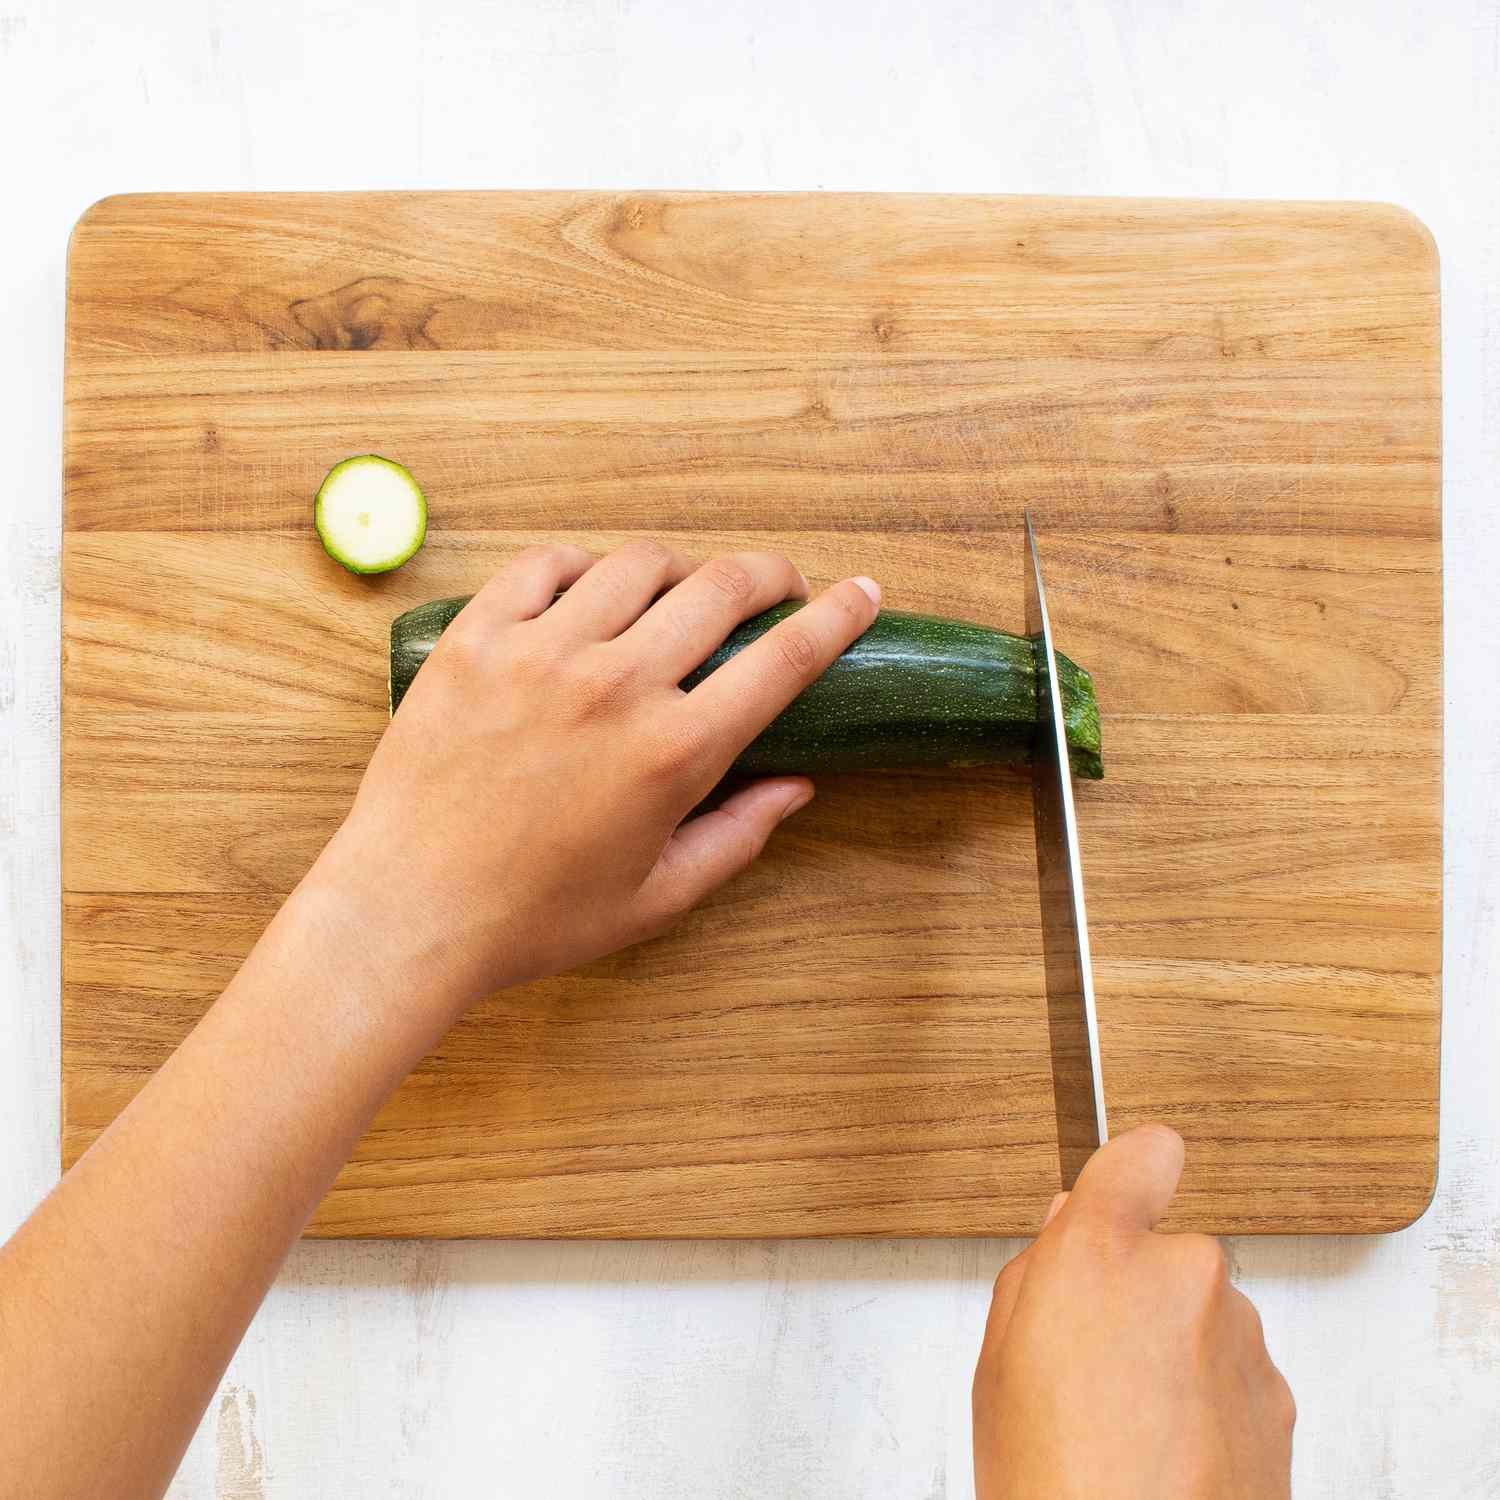 Cortar calabacines a mano con un cuchillo sobre una tabla de cortar de madera